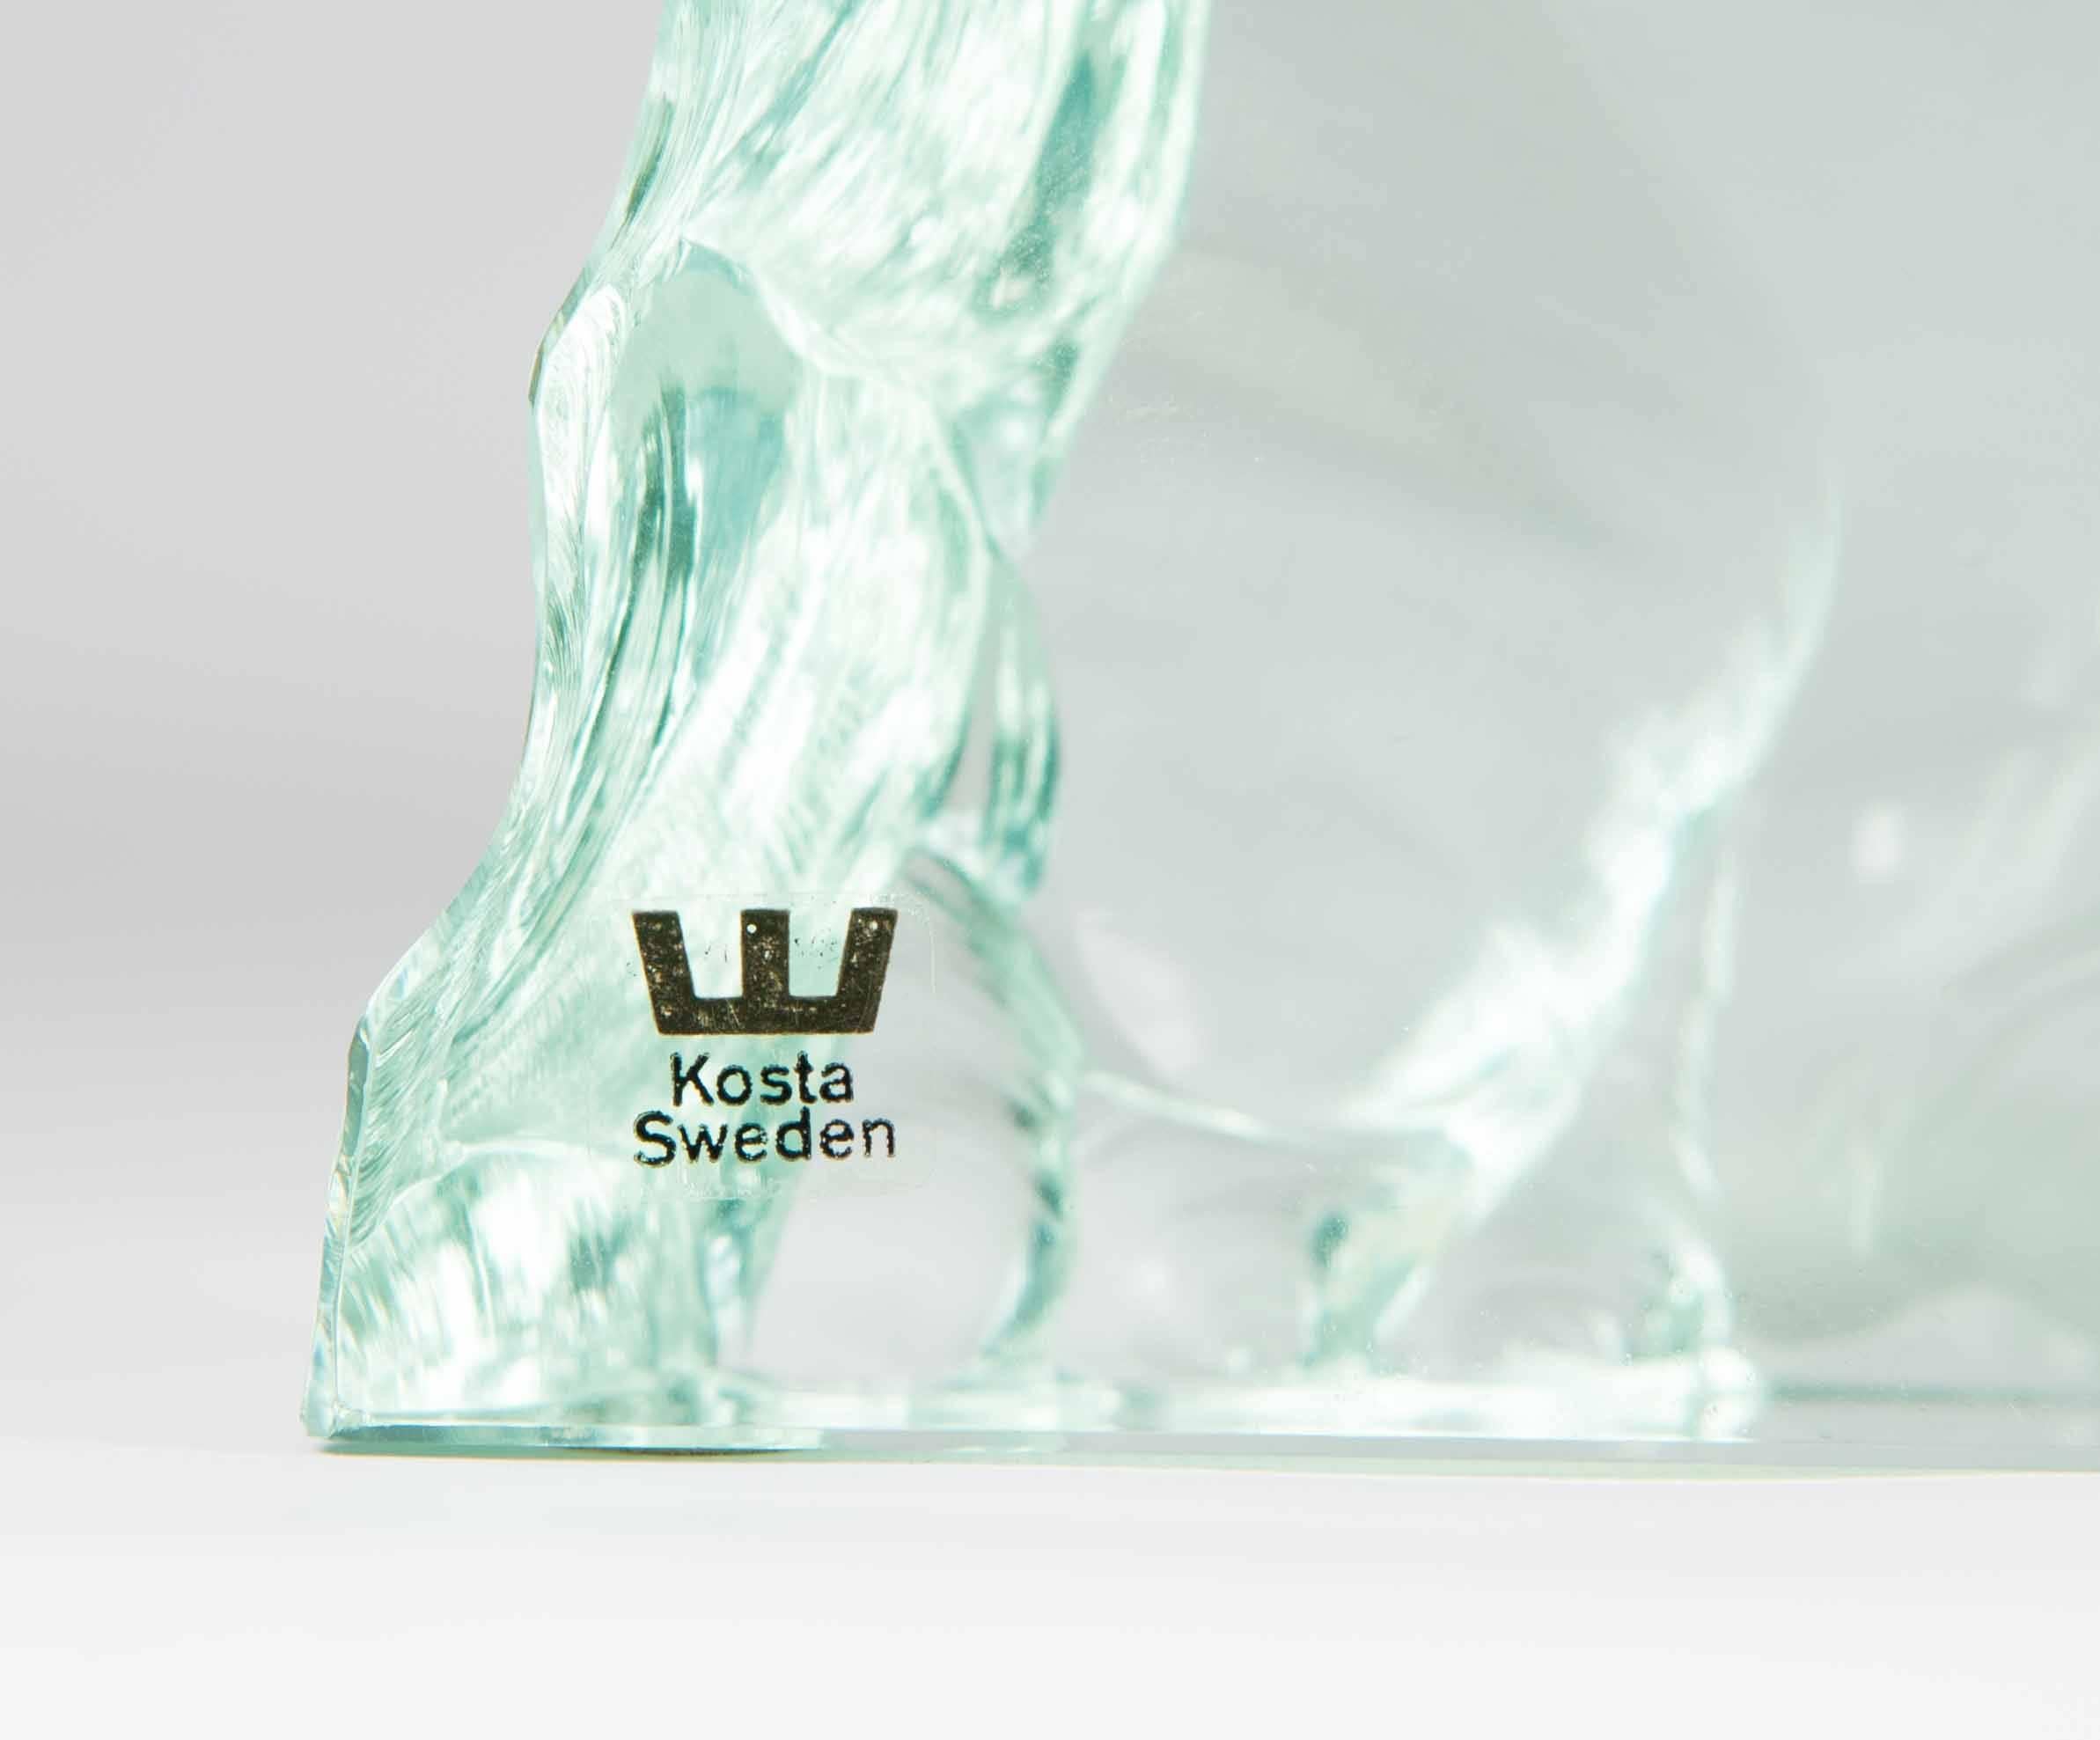 Dispaly of polar bear with cub etched in Iceberg. 
Kosta sticker on front - Svenskt Glas on base. 

Designed by Vicki Lindstrand for Kosta.